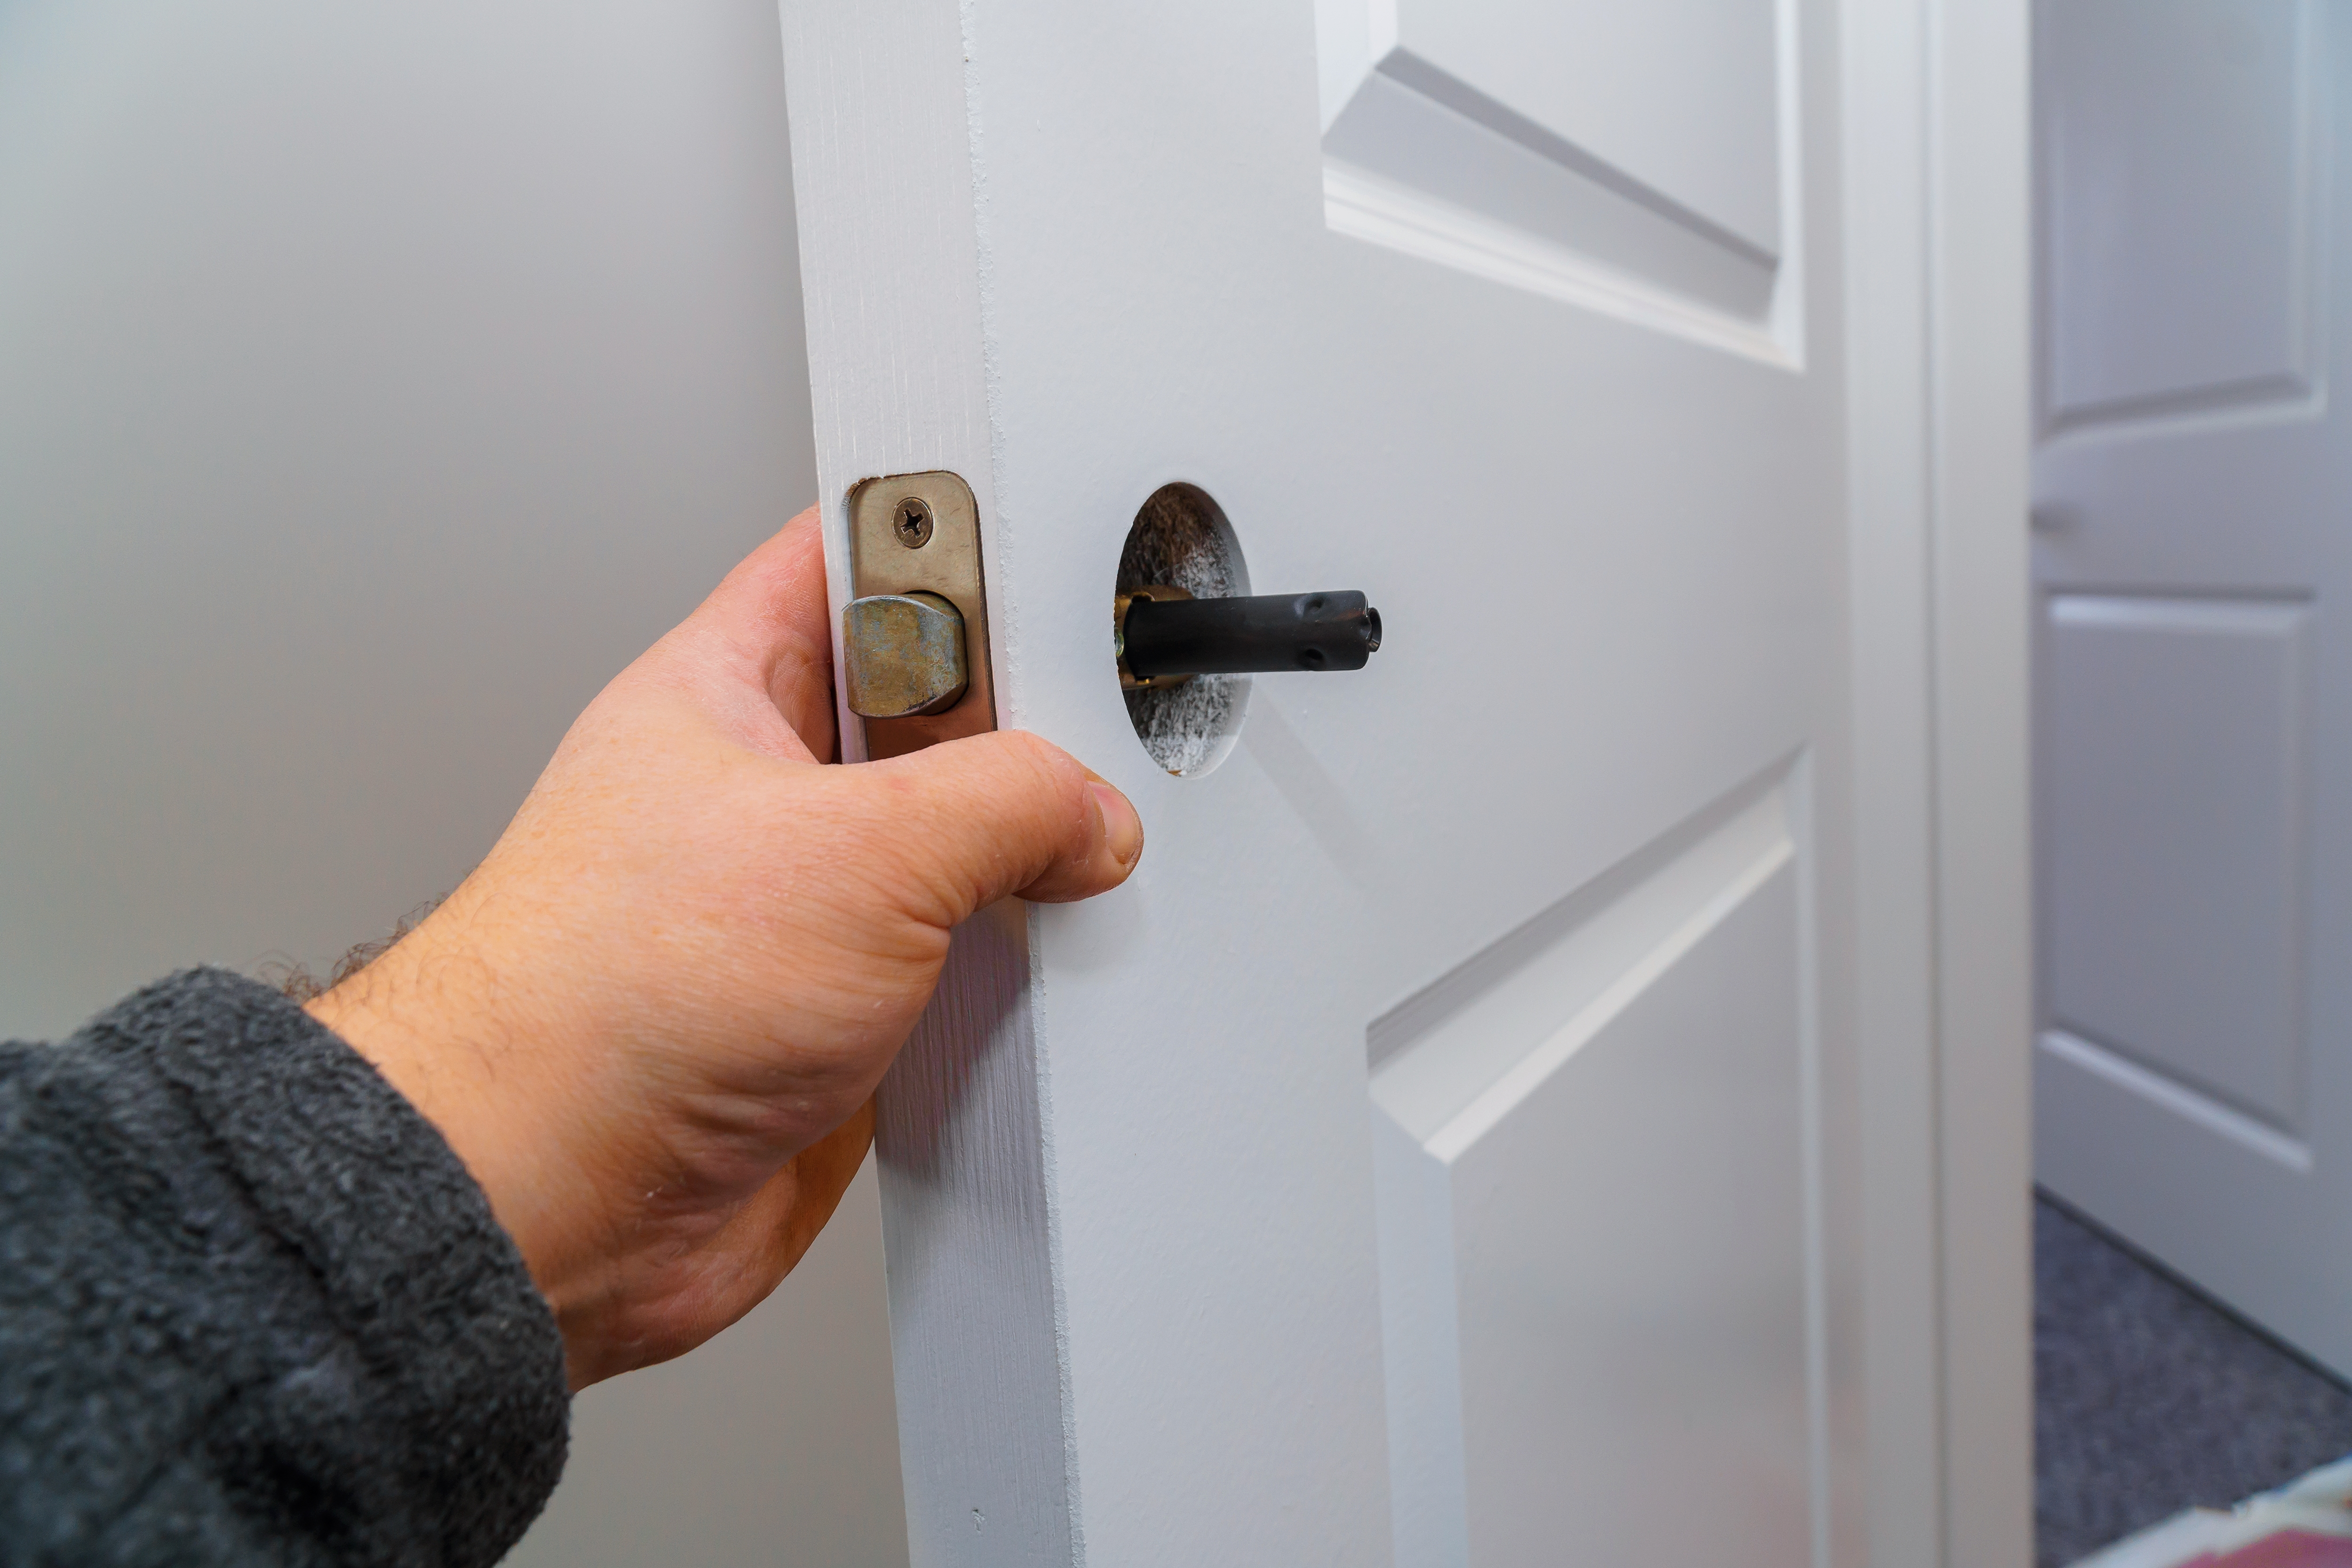 hands-repairing-a-door-lock-with-a-door-knobs-2022-11-12-10-42-07-utc.jpg